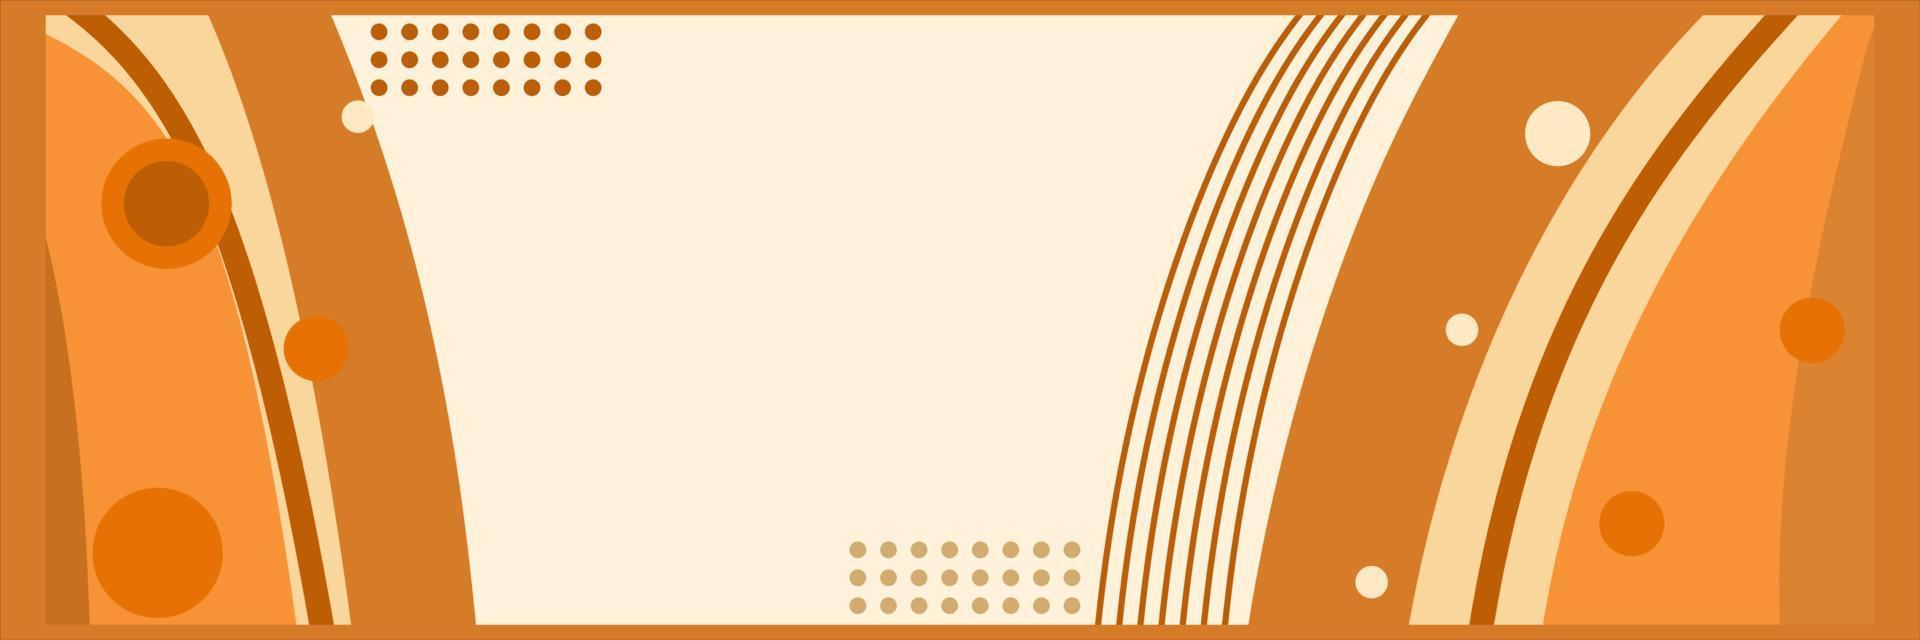 Hintergrund abstraktes orangefarbenes flaches Design vektor